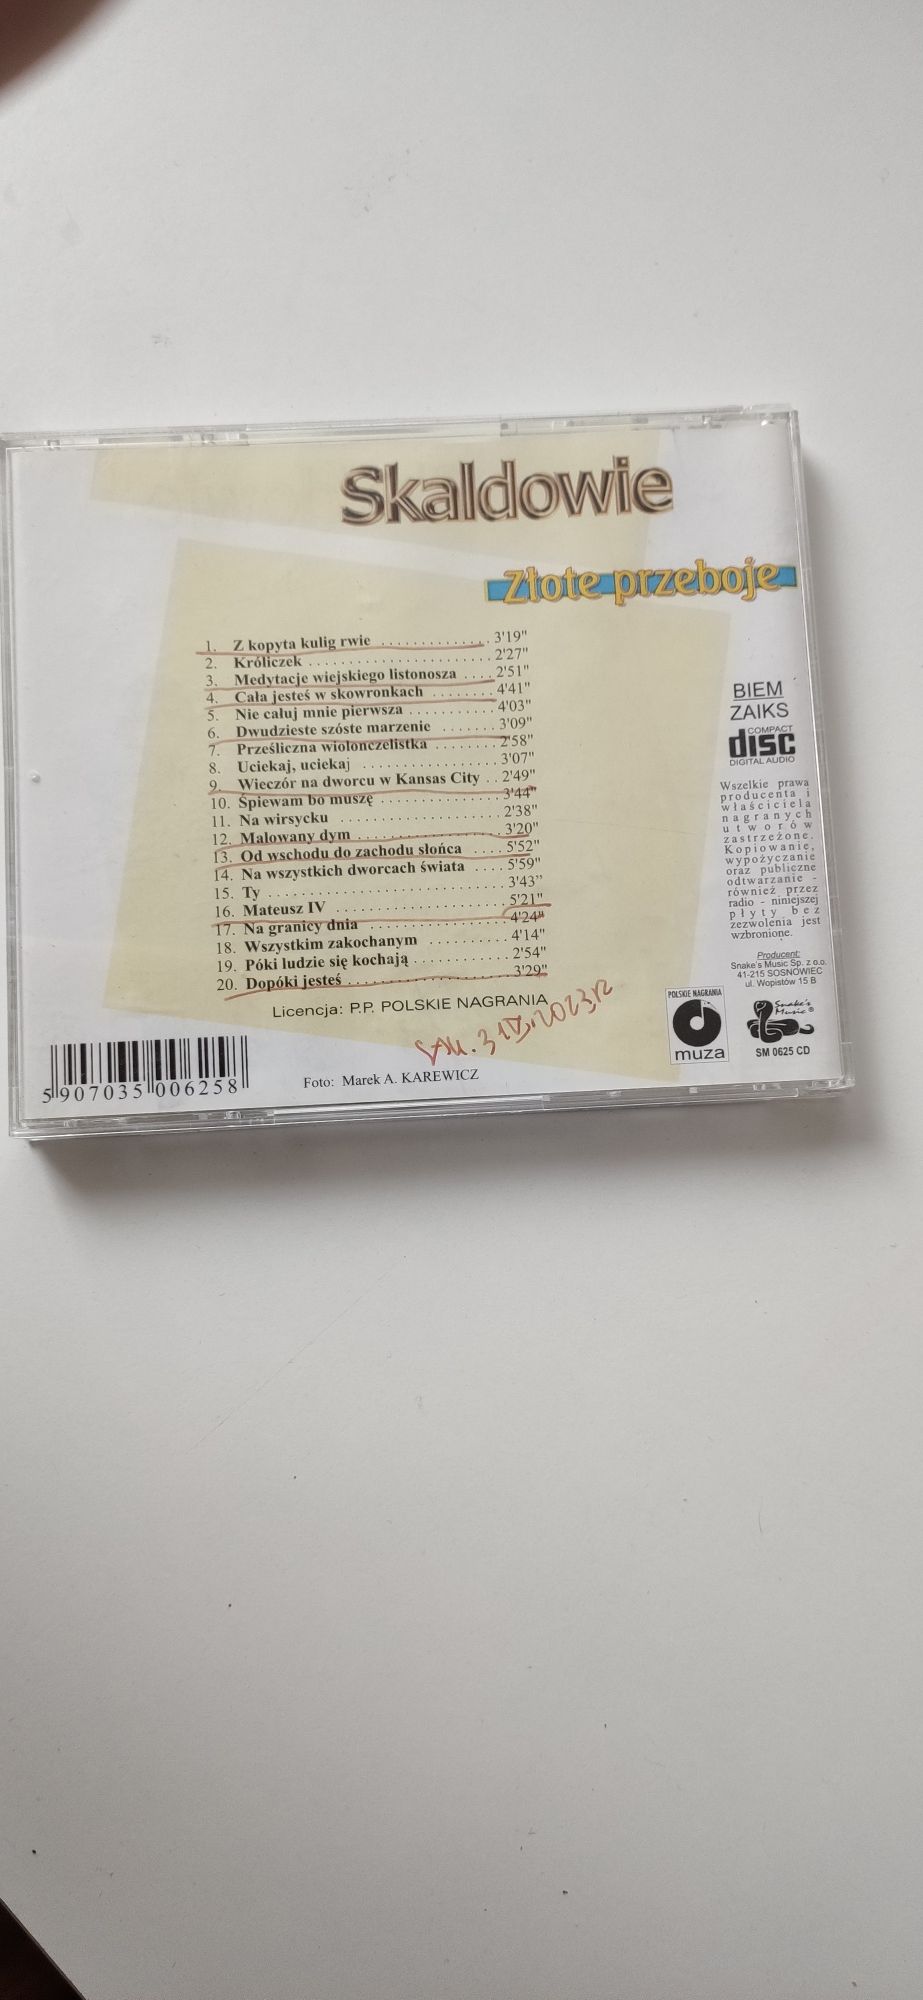 Skaldowie -zlote przeboje cd